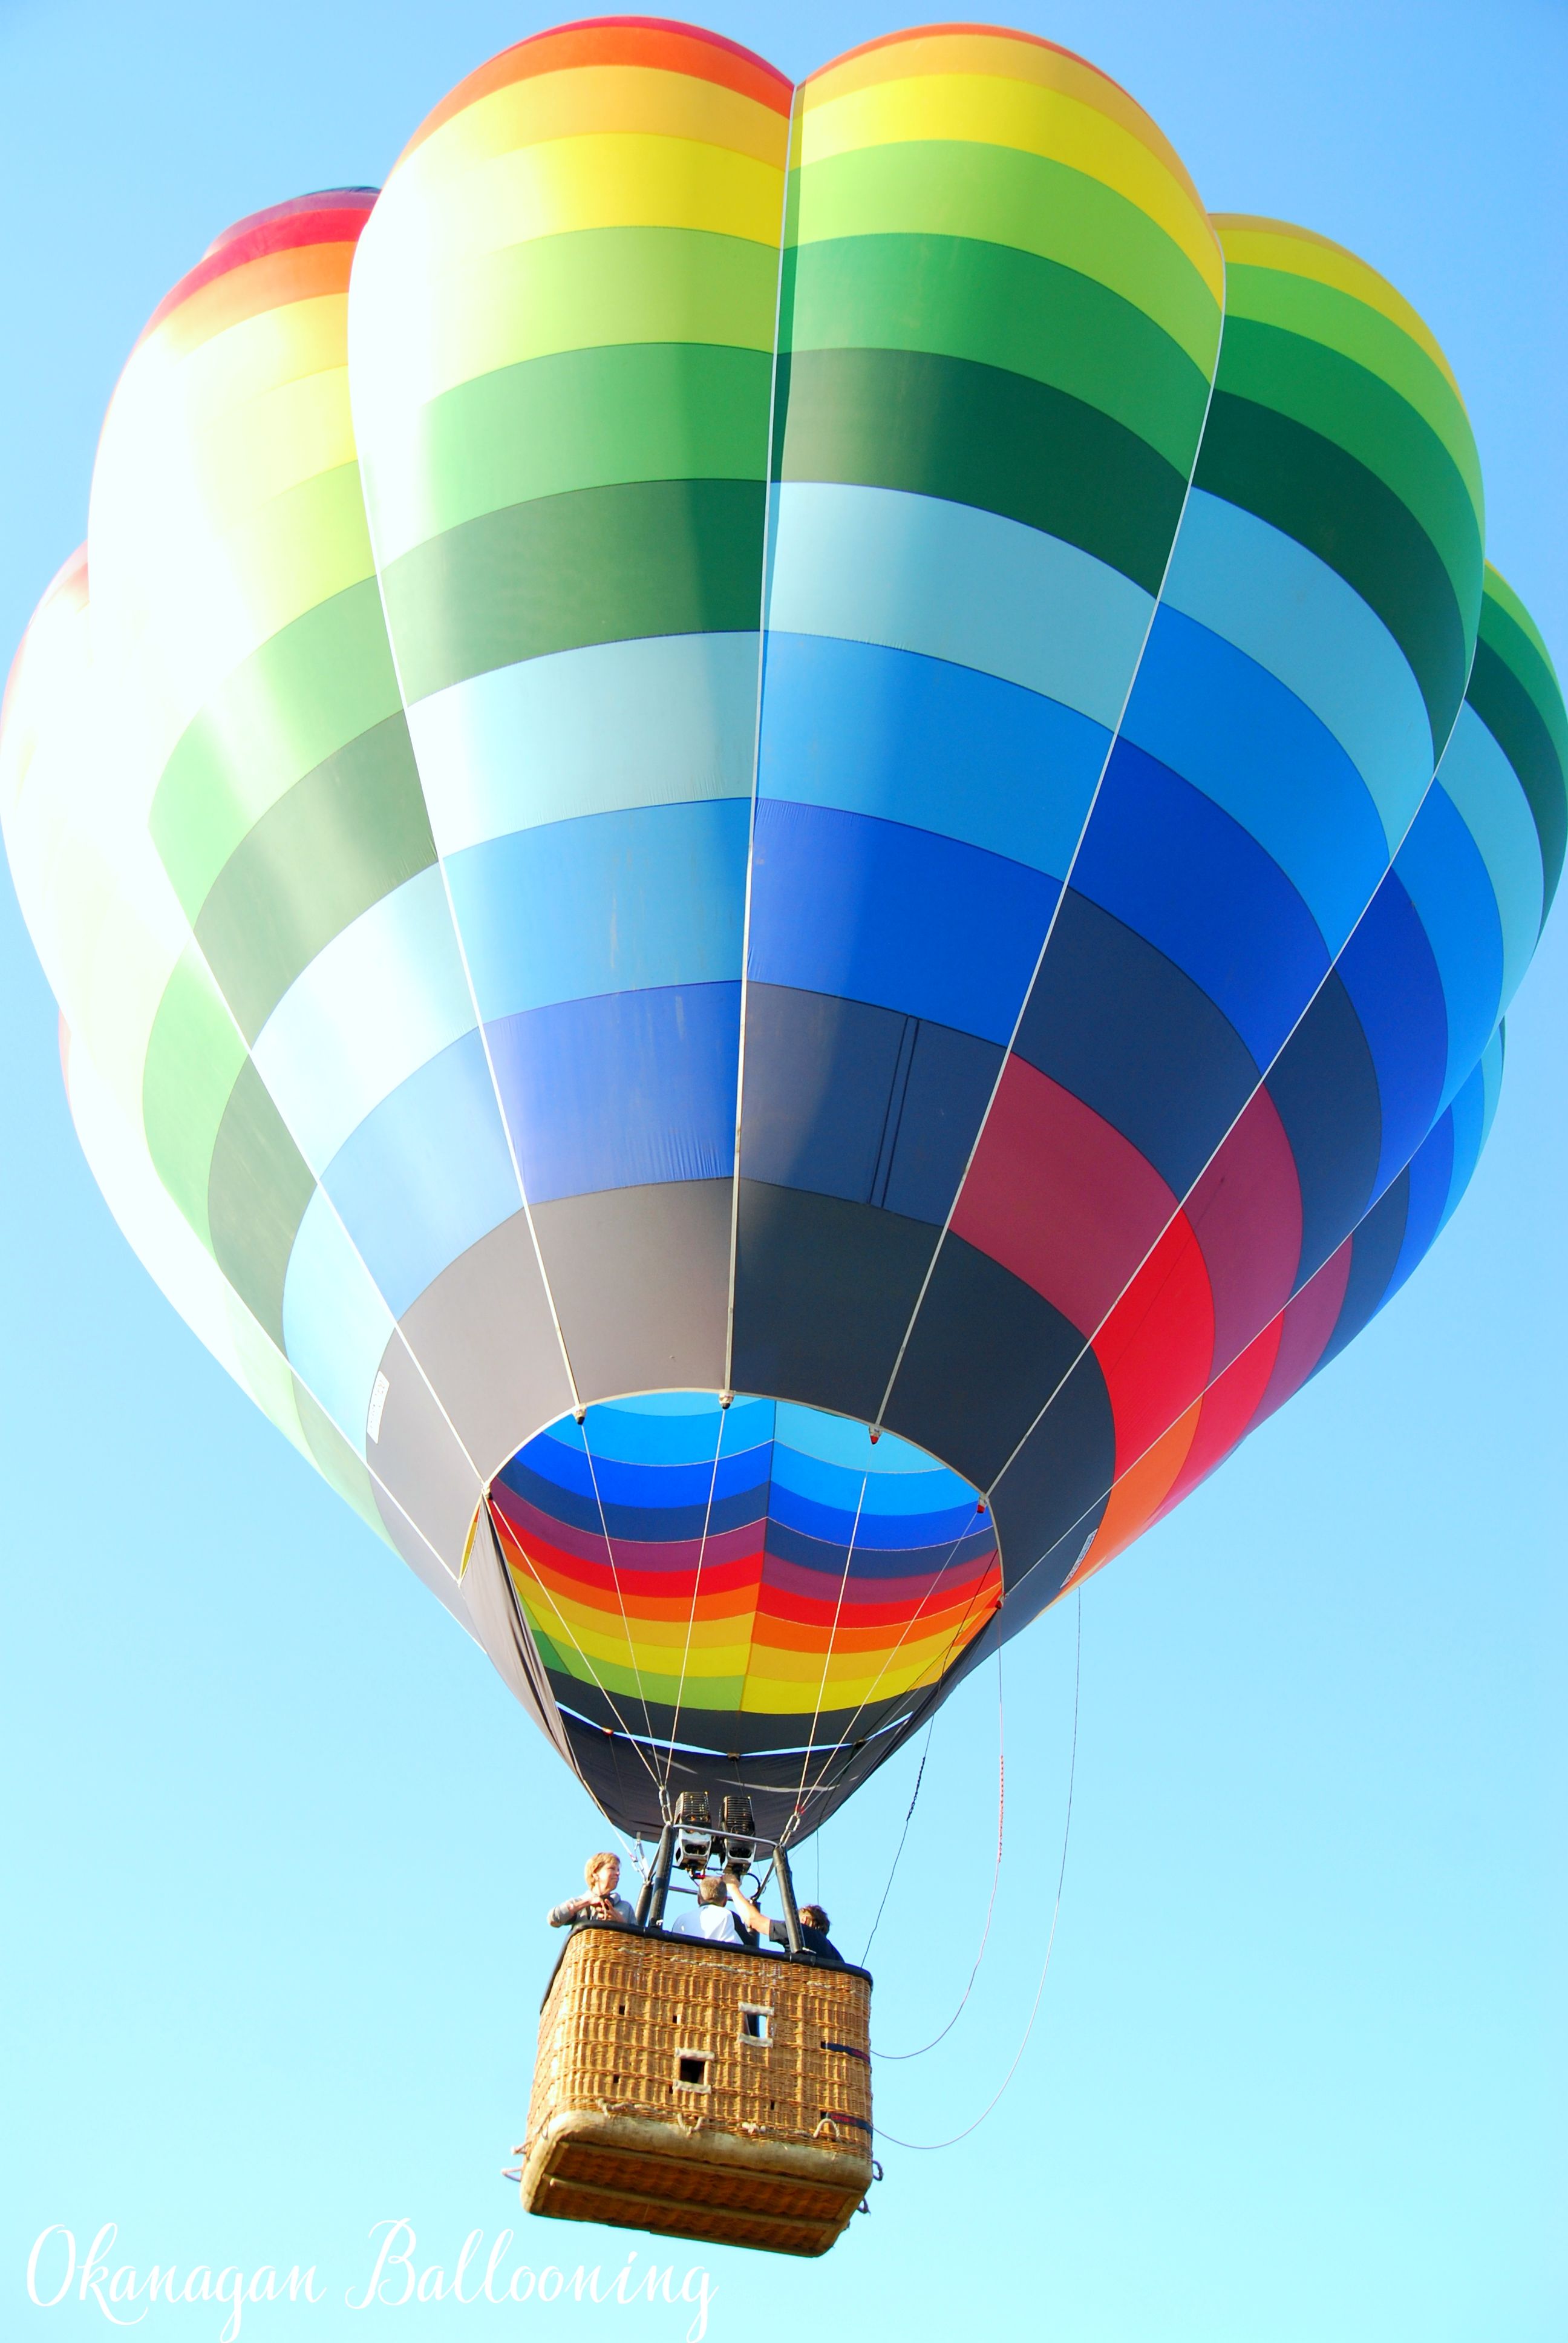 High Resolution Hot Air Balloon , HD Wallpaper & Backgrounds